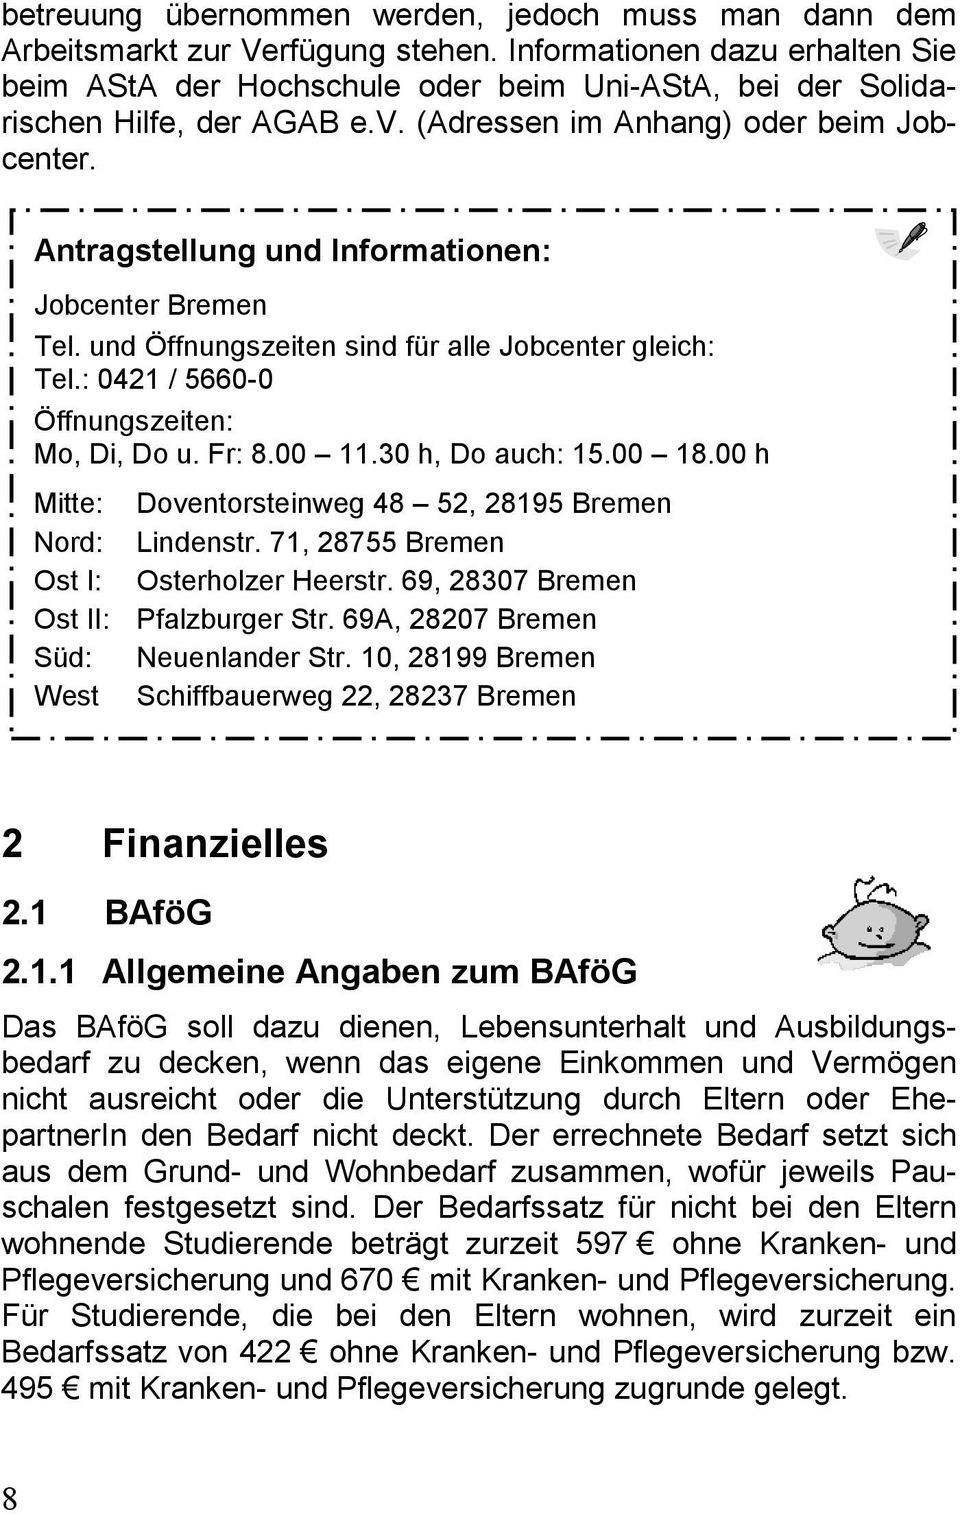 Antragstellung und Informationen: Jobcenter Bremen Tel. und Öffnungszeiten sind für alle Jobcenter gleich: Tel.: 0421 / 5660-0 Öffnungszeiten: Mo, Di, Do u. Fr: 8.00 11.30 h, Do auch: 15.00 18.